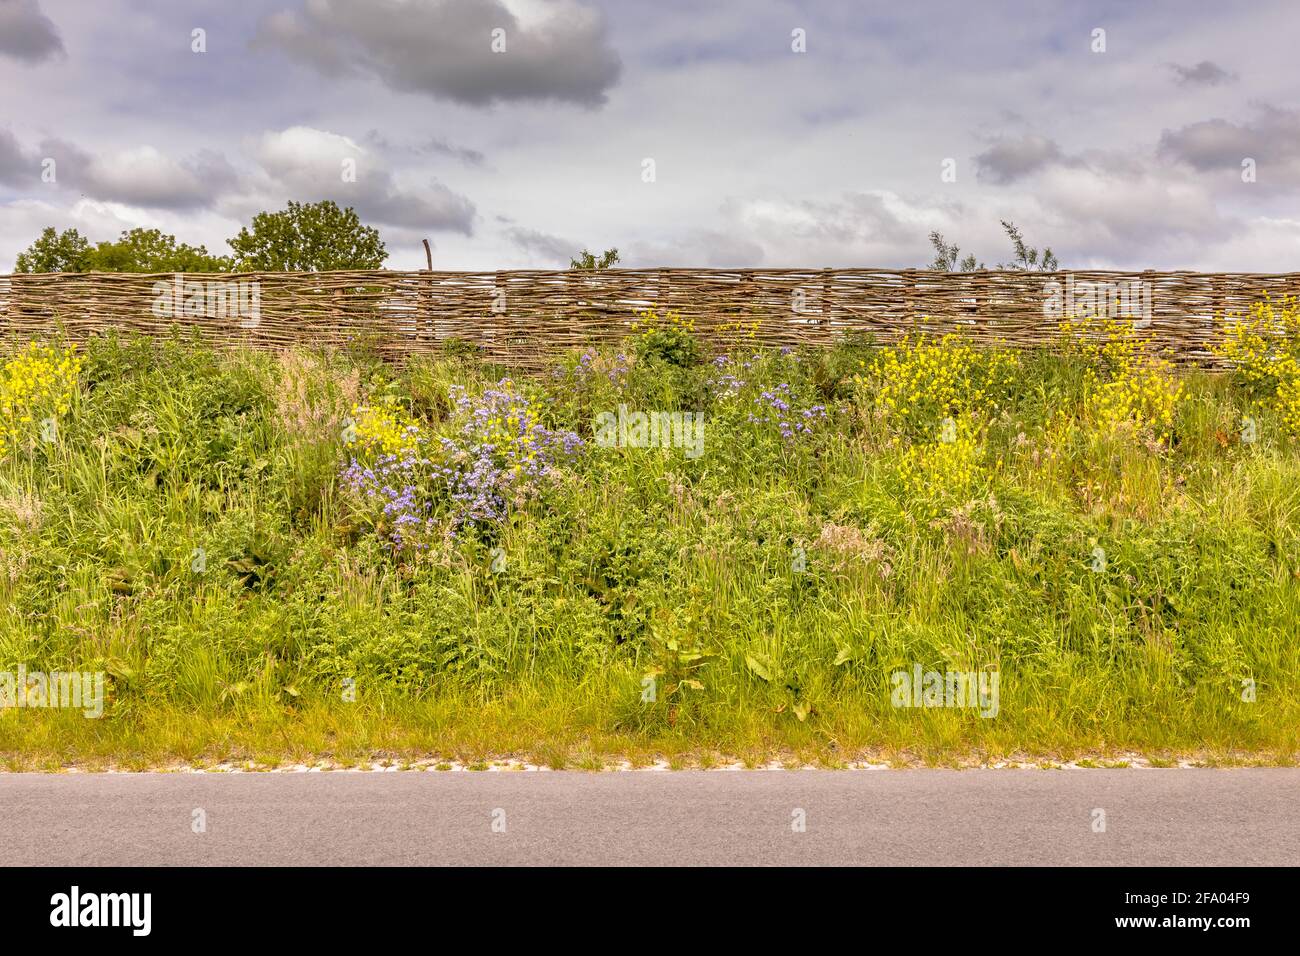 Barrière sonore écologique mur de terre avec clôture en osier des branches  de saule. Les fleurs et les arbres poussent sur la digue avec de la  végétation. Pays-Bas Photo Stock - Alamy